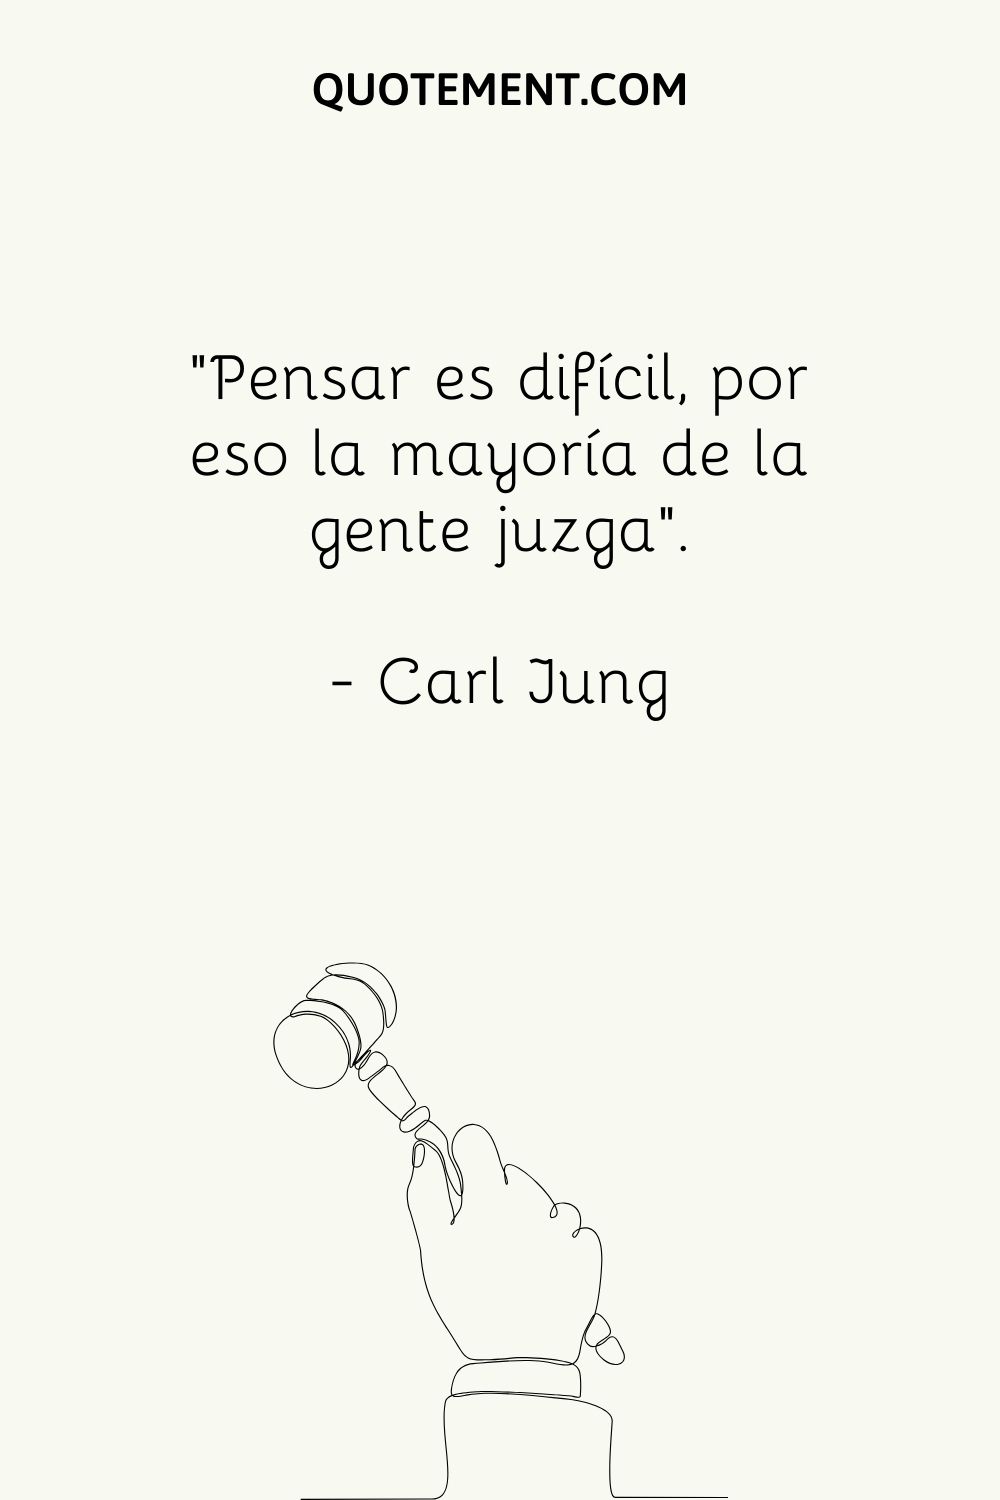 "Pensar es difícil, por eso la mayoría de la gente juzga". - Carl Jung